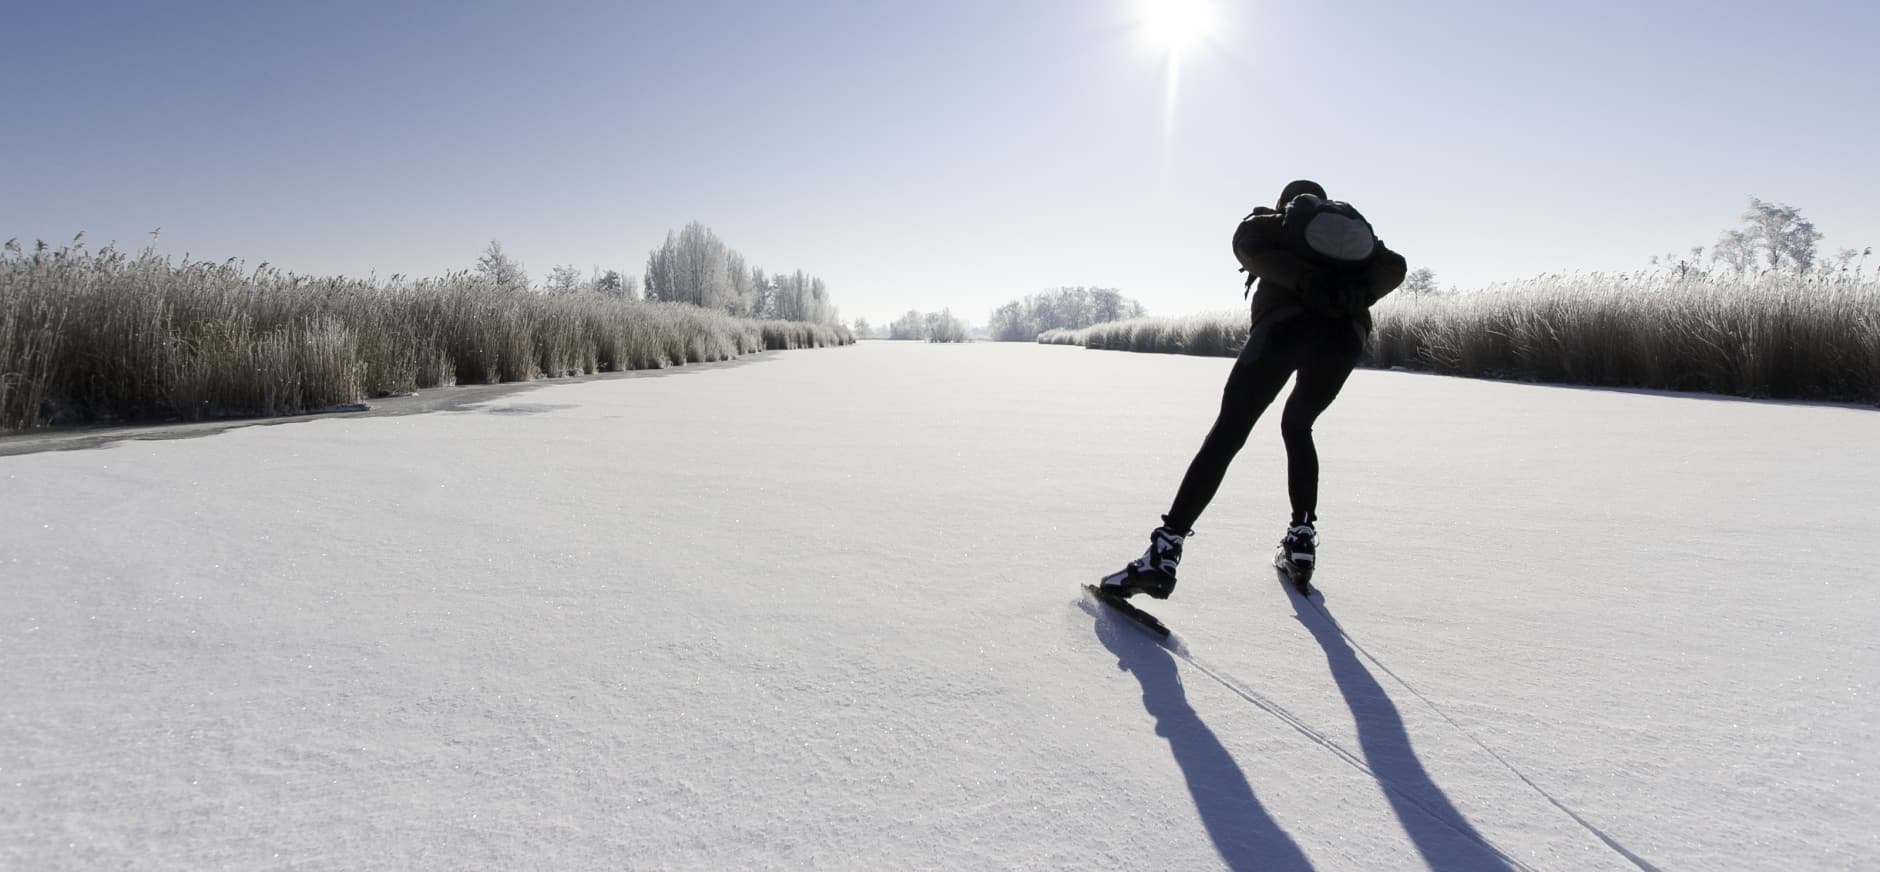 Schaatser, schaatst door winters landschap